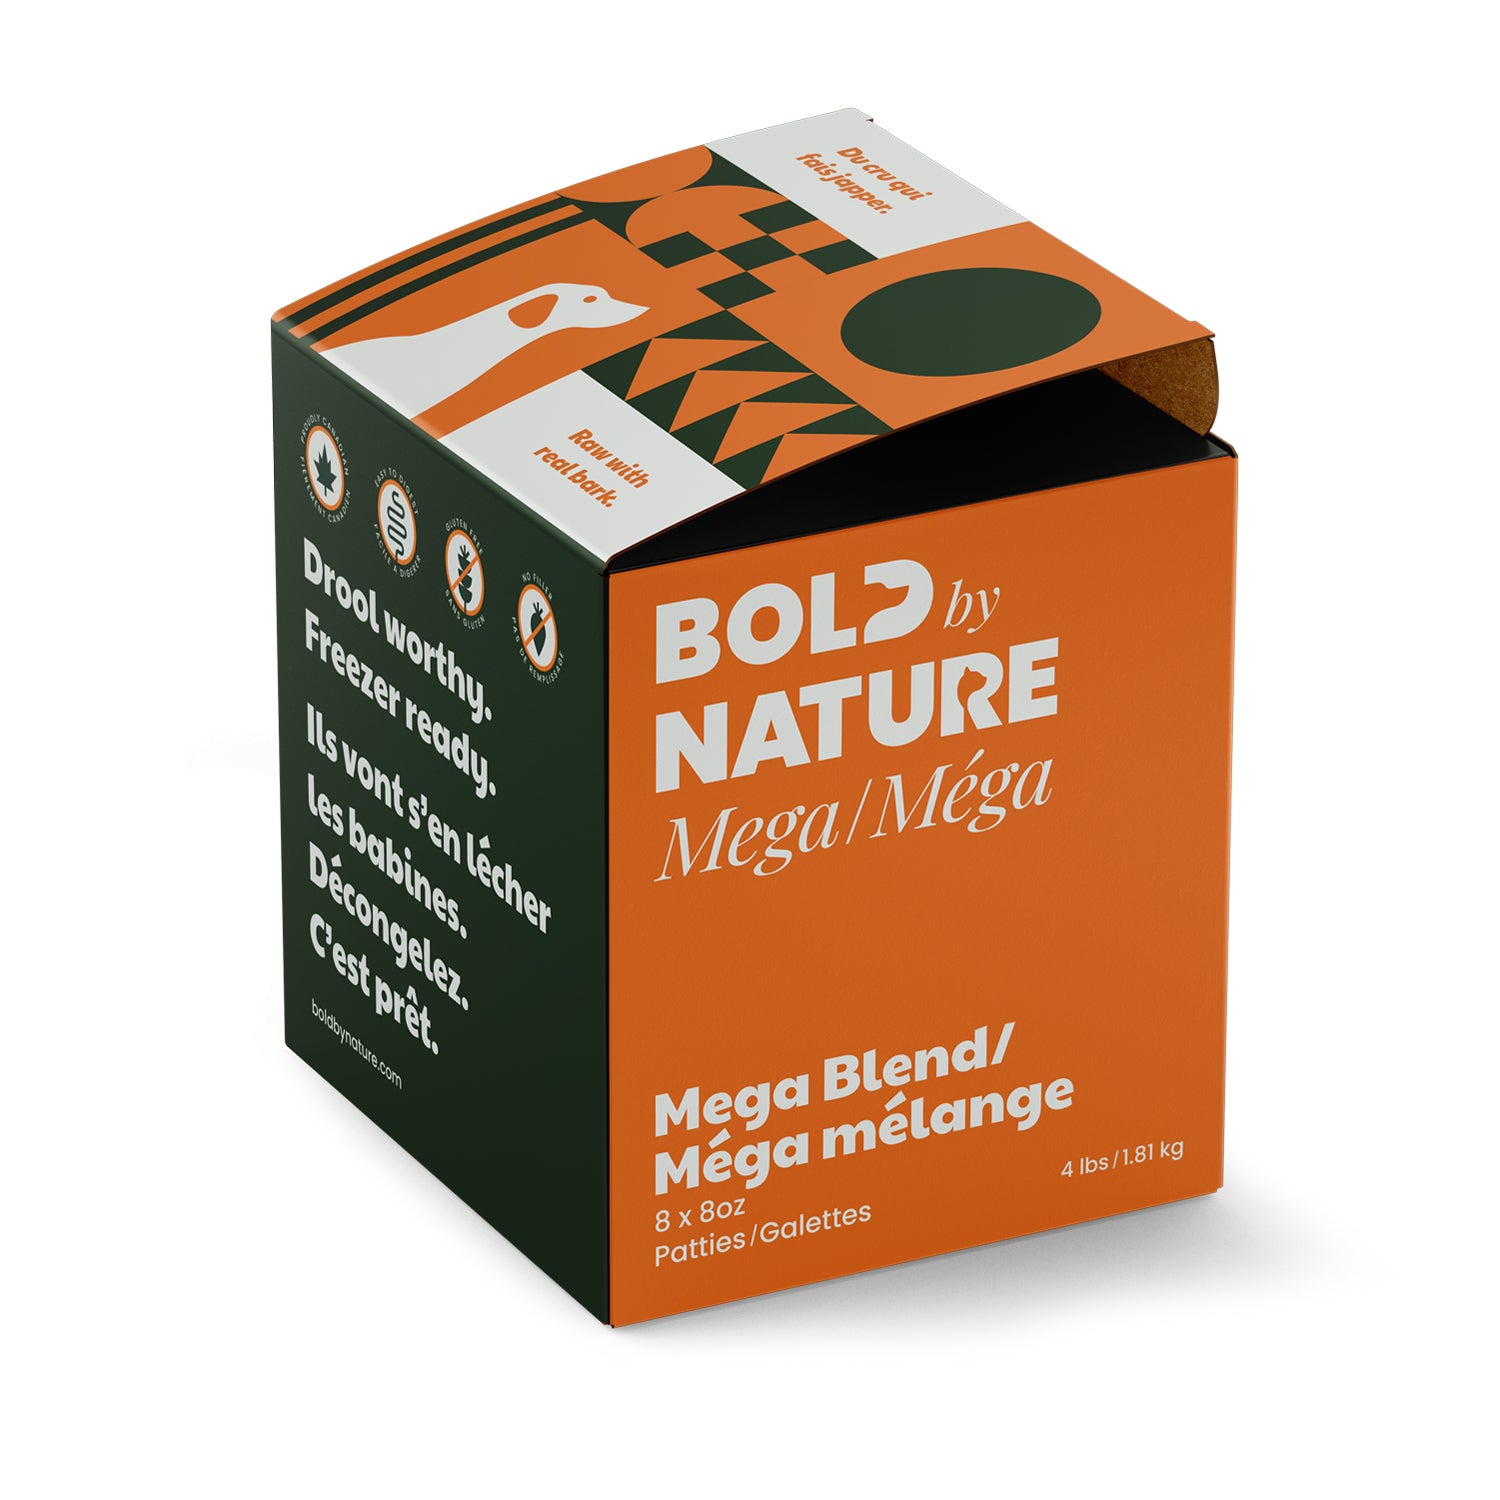 Bold by Nature (Mega Dog) - Mega Blend - Frozen Product